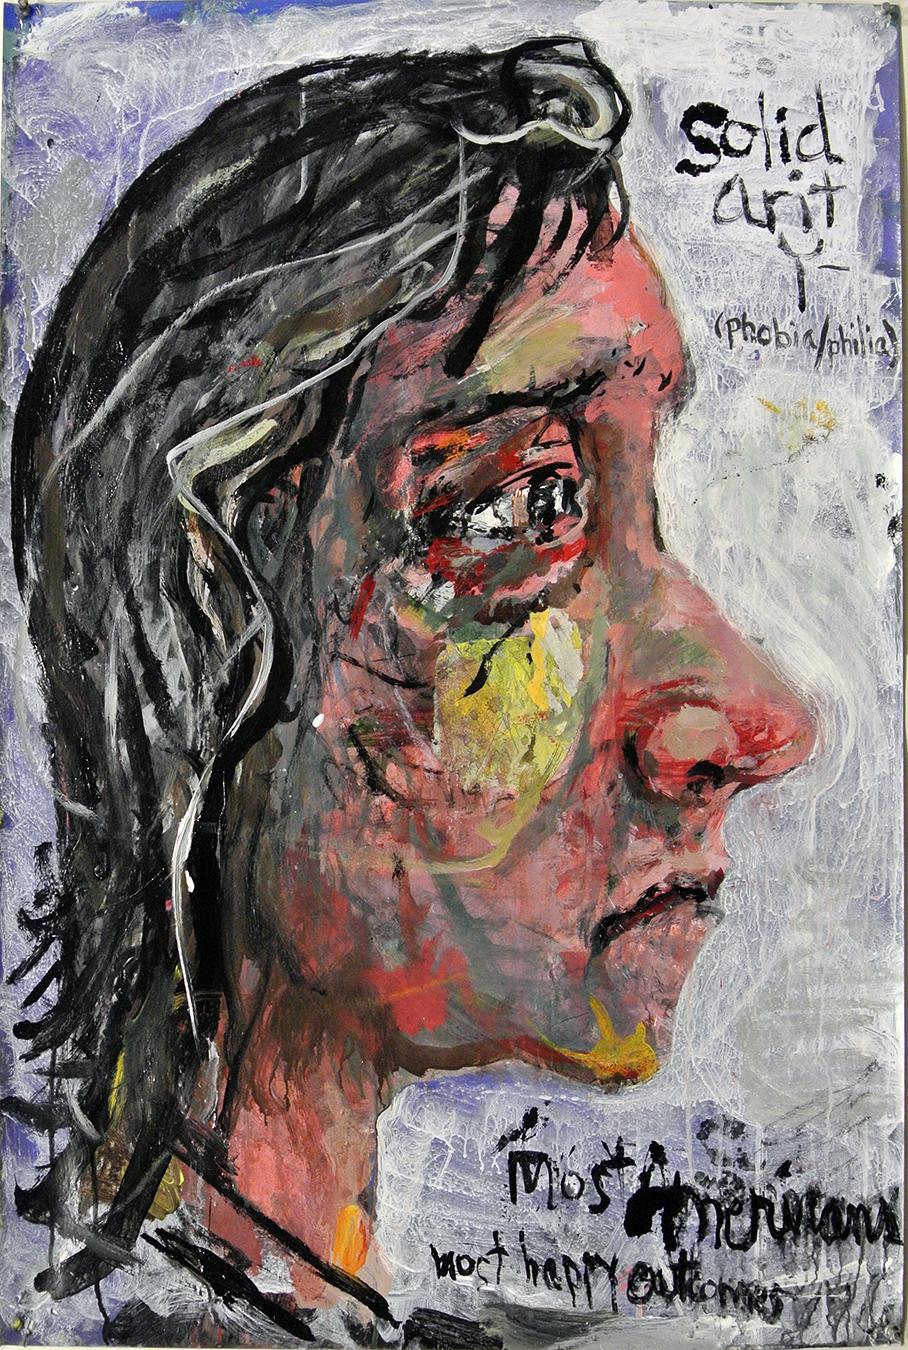 Portrait Painting Dale Williams - "Solidarité", peinture acrylique, portrait, politique, humanité, États-Unis, résistance